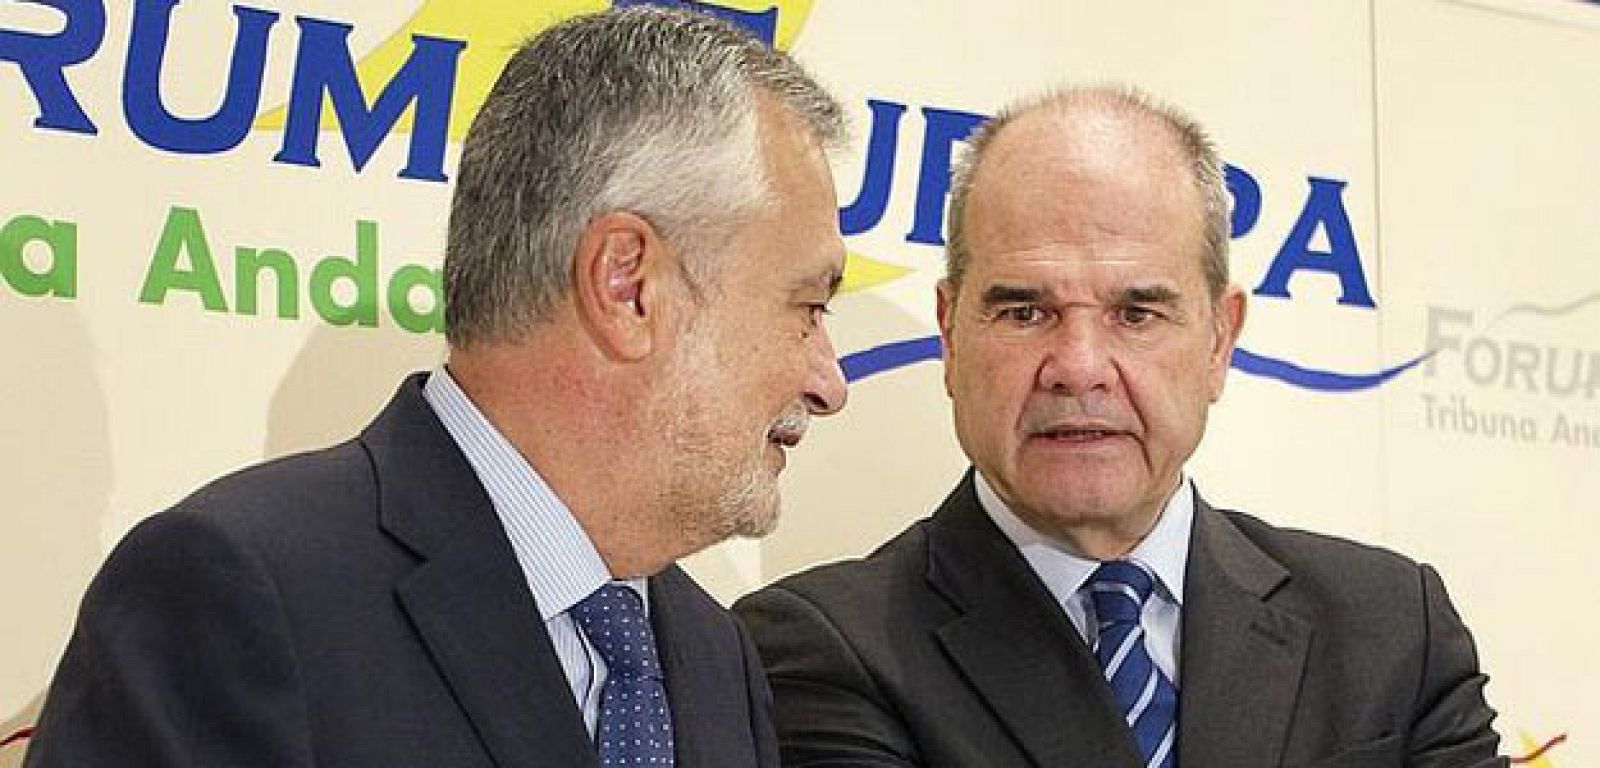 Los expresidentes de la Junta de Andalucía José Antonio Griñan y Manuel Chaves, en una imagen de 2012.